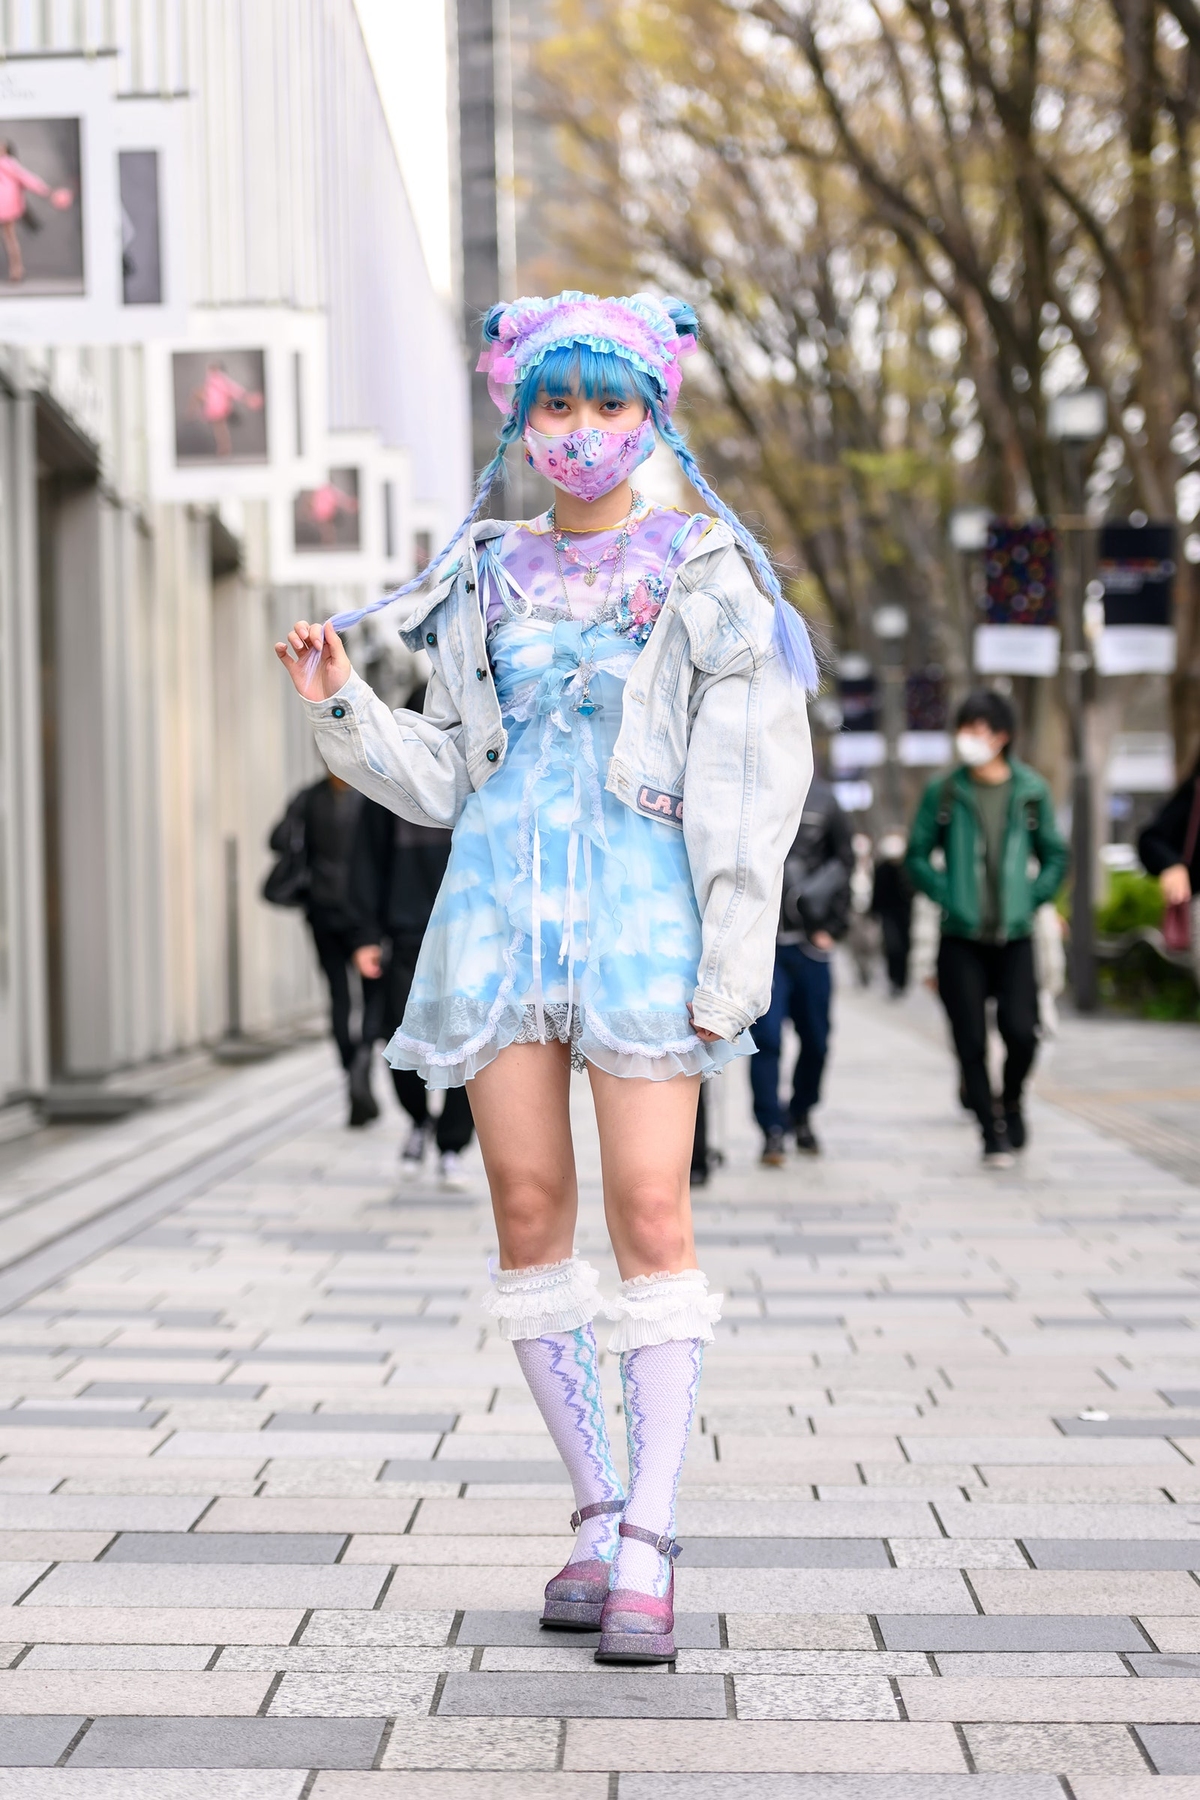 Khẳng định cá tính bằng khẩu trang lạ lùng tại tuần lễ thời trang Tokyo  - Ảnh 2